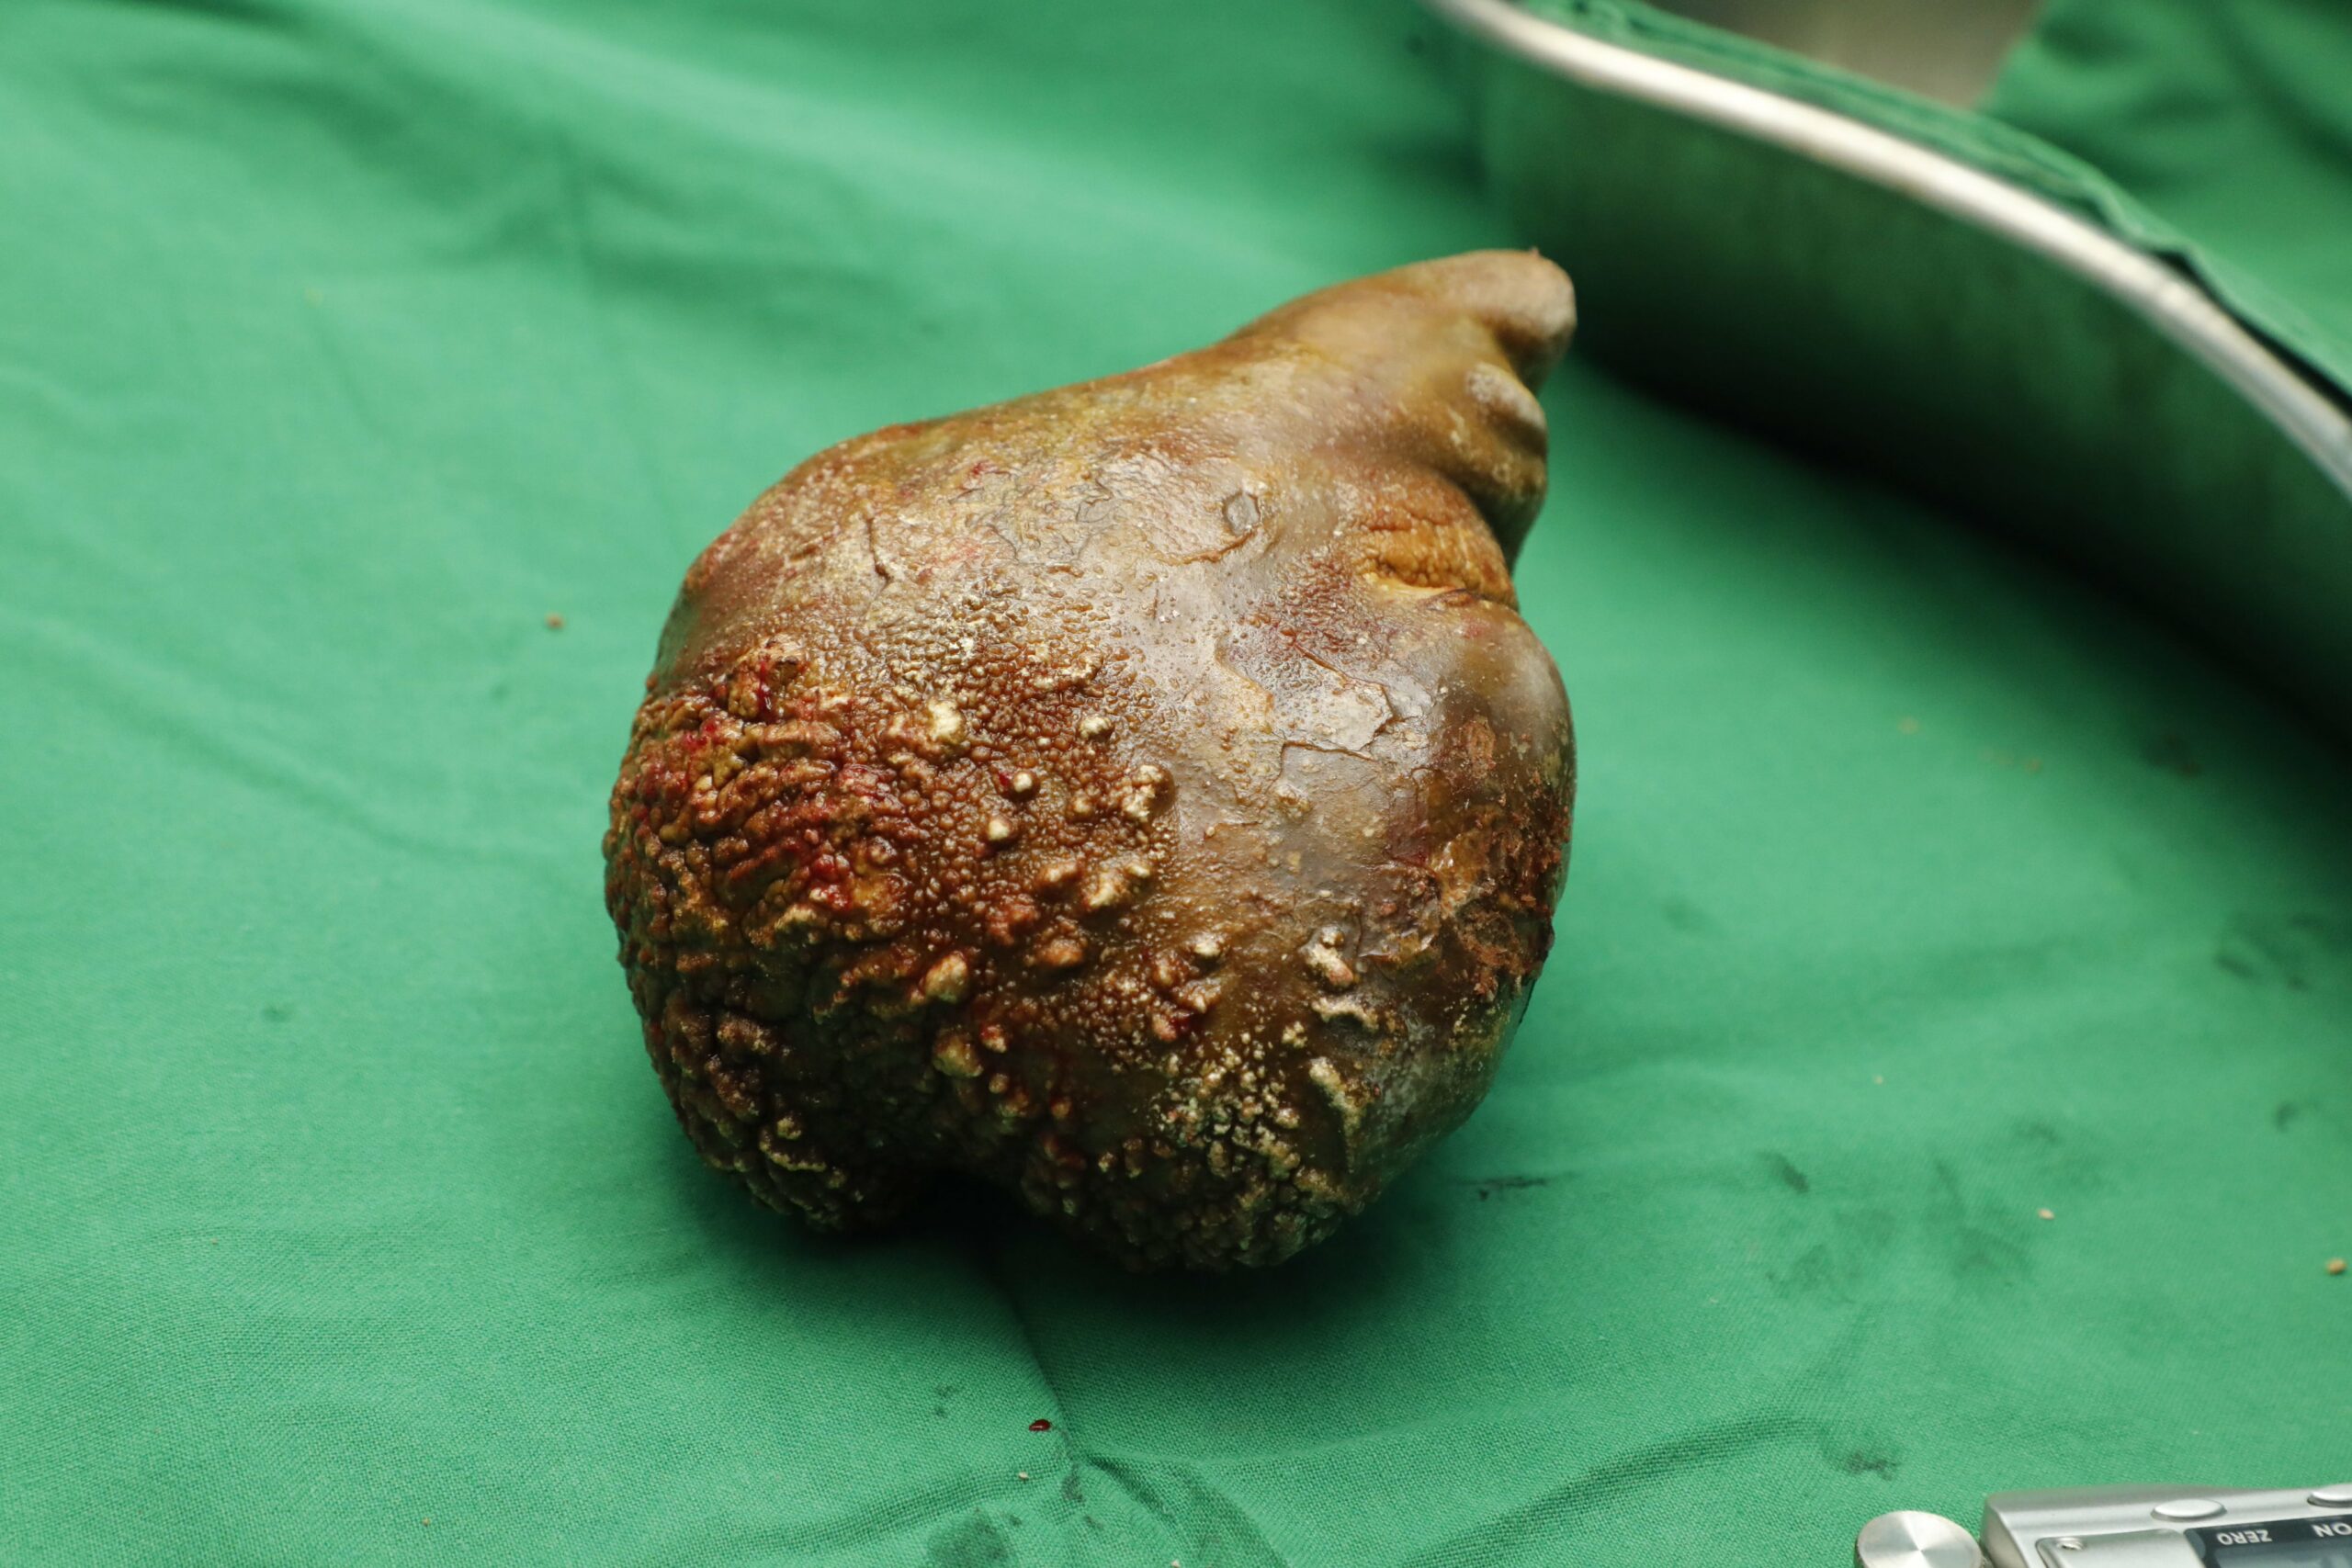 Kidney stone removed in Sri Lanka